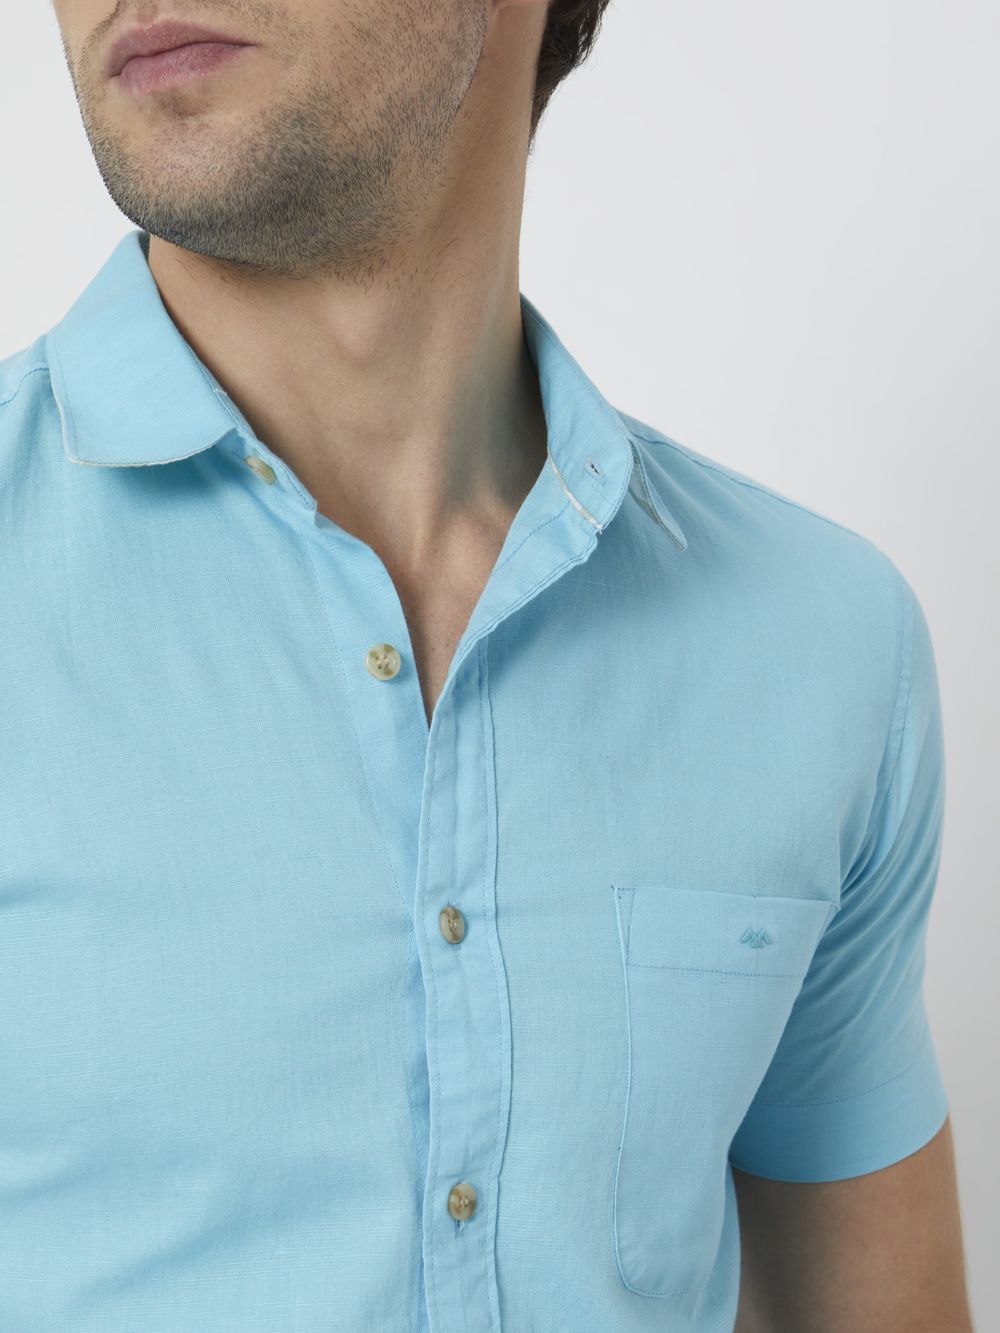 Turquoise Cotton Linen Plain Slim Fit Casual Shirt